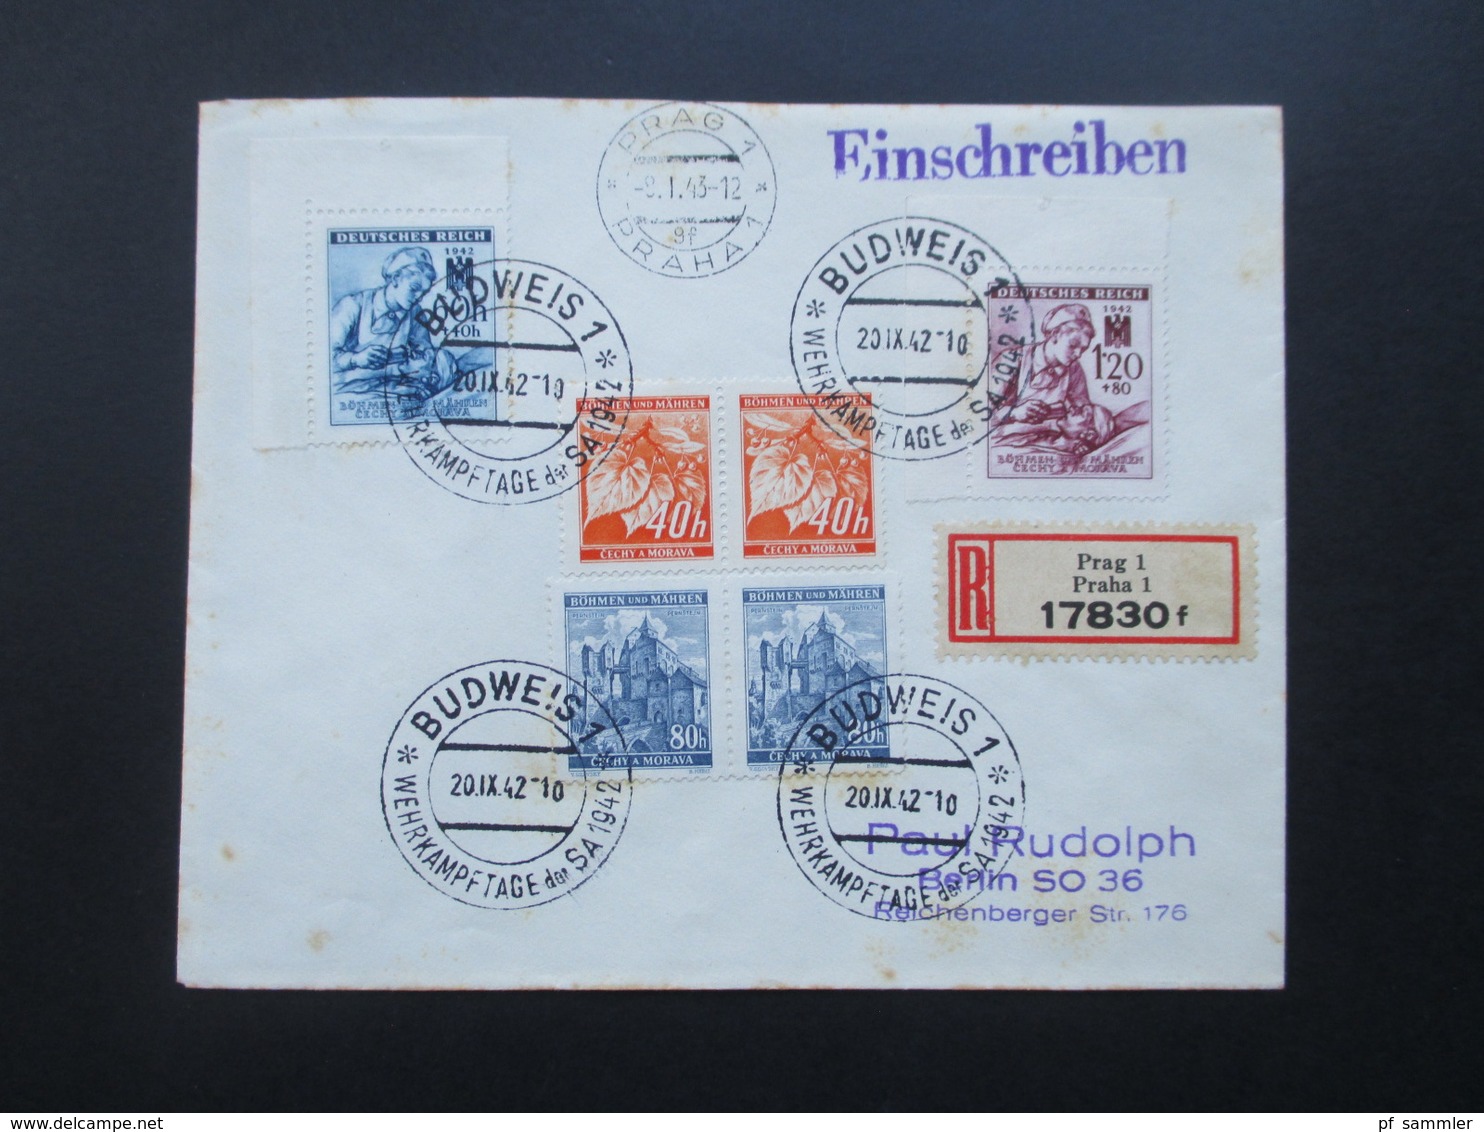 Böhmen Und Mähren 1942 / 43 SST / Sonderbeleg Ca. 3 Monate Später Echt Gelaufen Prag - Berlin! R-Brief Prag 1 17830 F - Briefe U. Dokumente